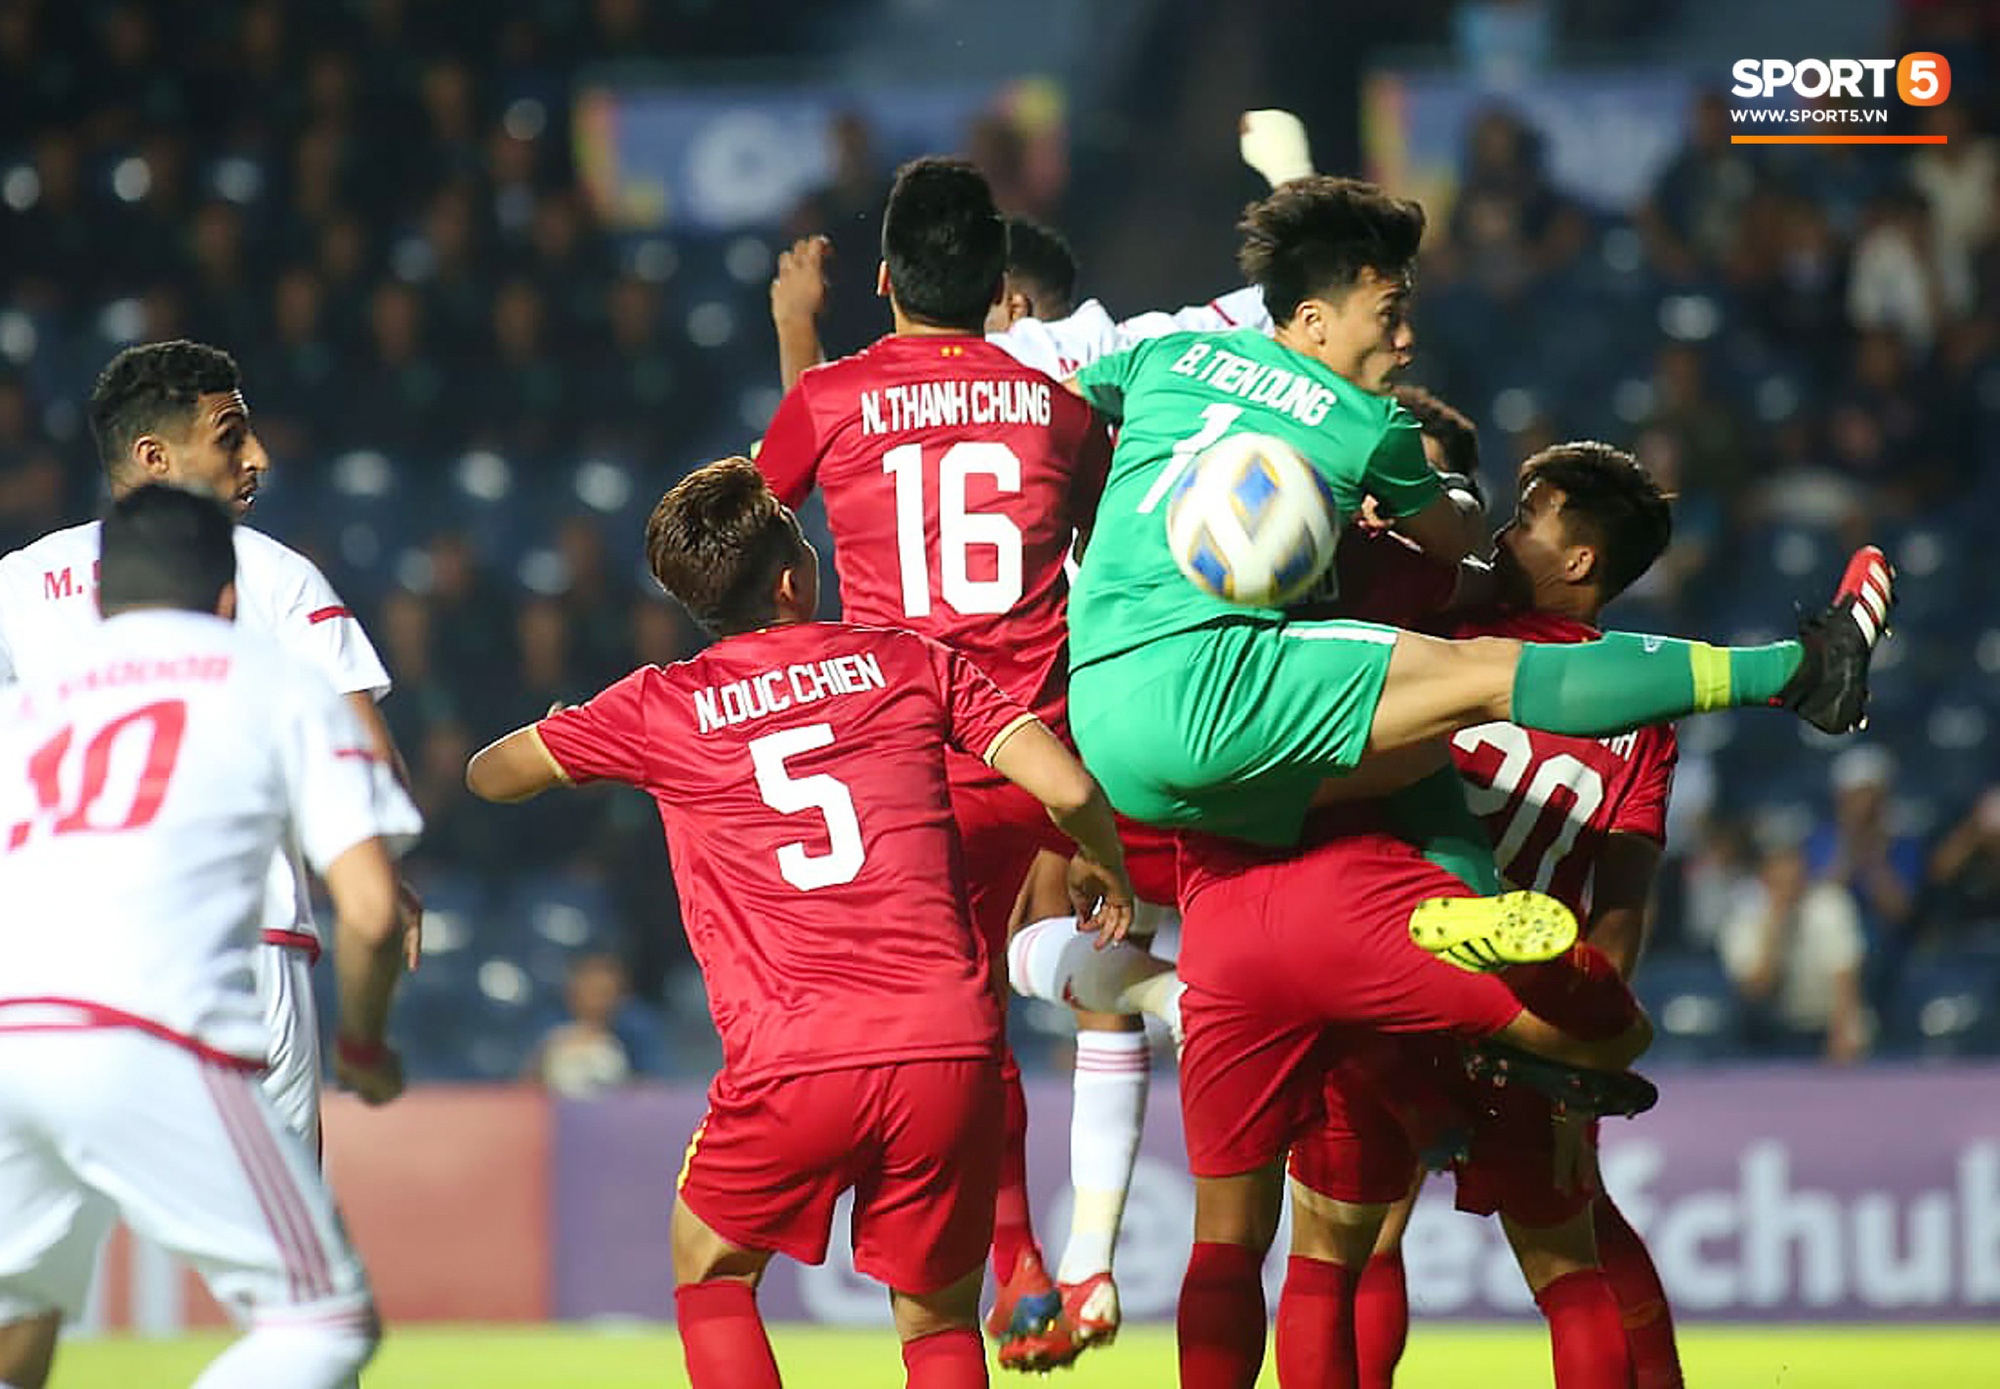 Fan Thái Lan chê thầy Park chỉ biết cho các học trò U23 Việt Nam dựng xe buýt trước khung thành để chịu trận - Ảnh 6.